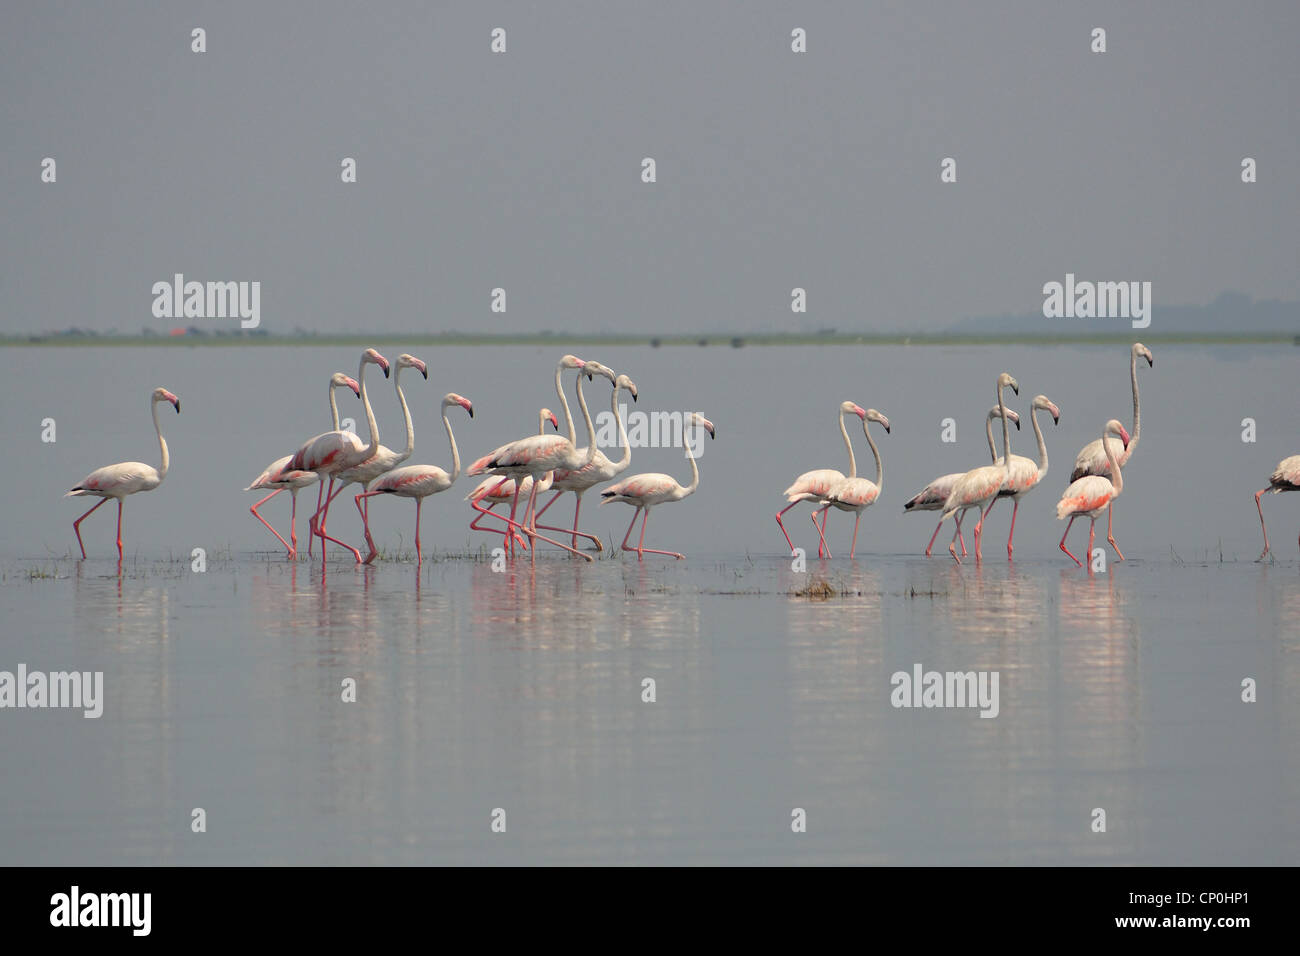 Flamingos in Nalabana Bird sanctuary Stock Photo